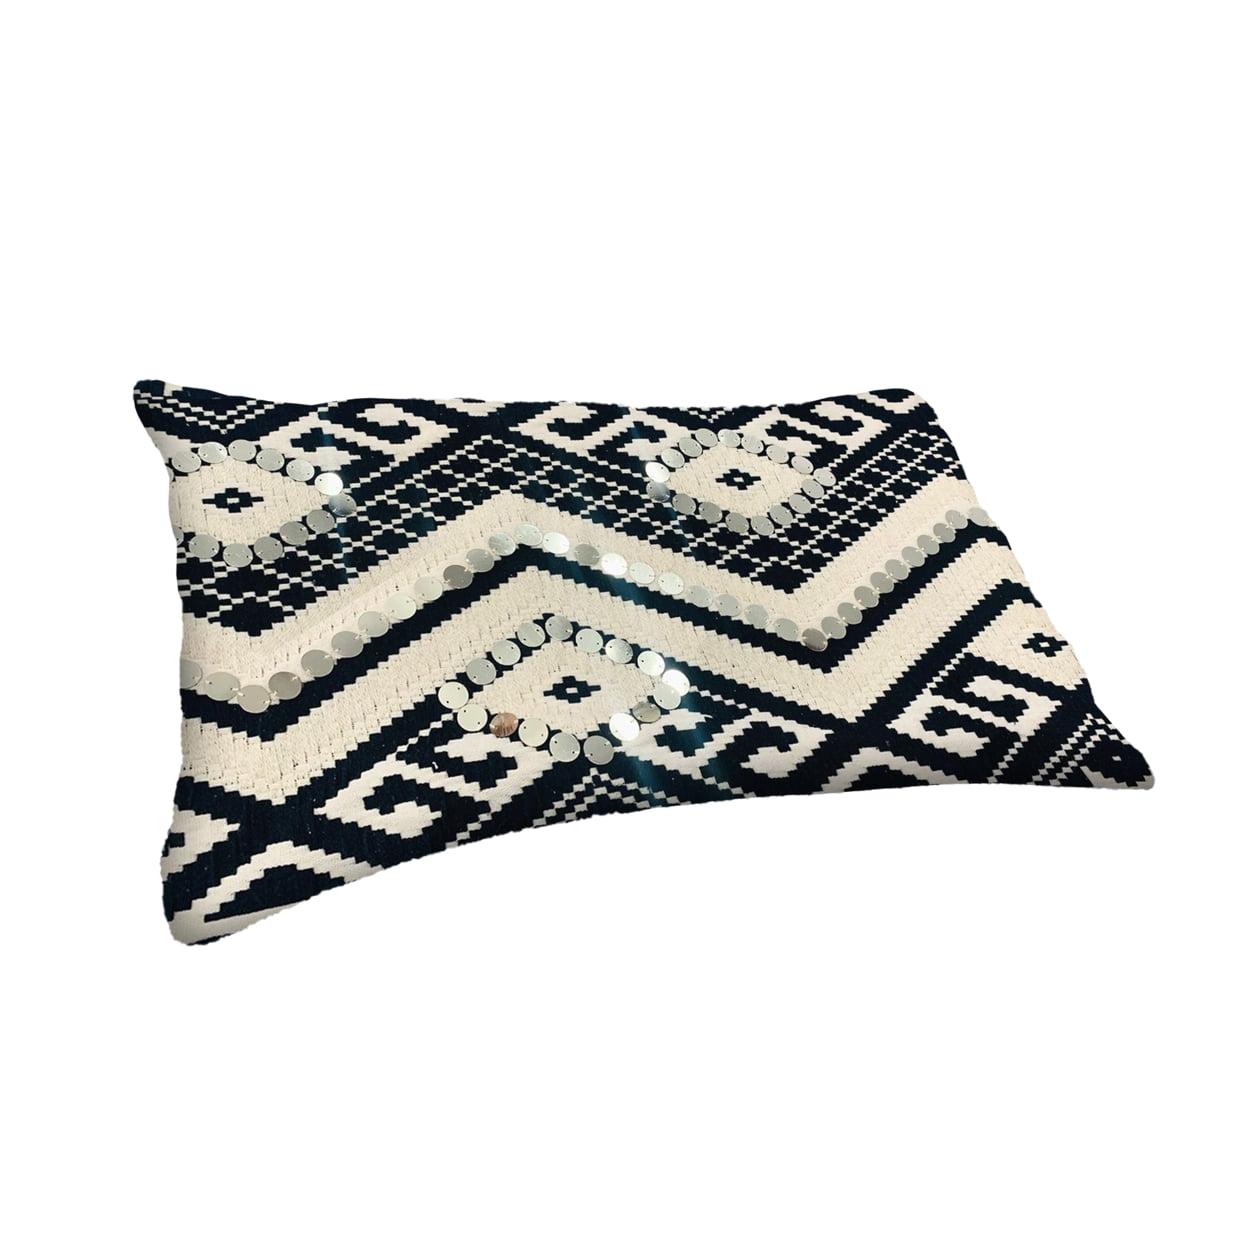 Classic Aztec Sequin Accent Cotton Lumbar Pillow in Black & White